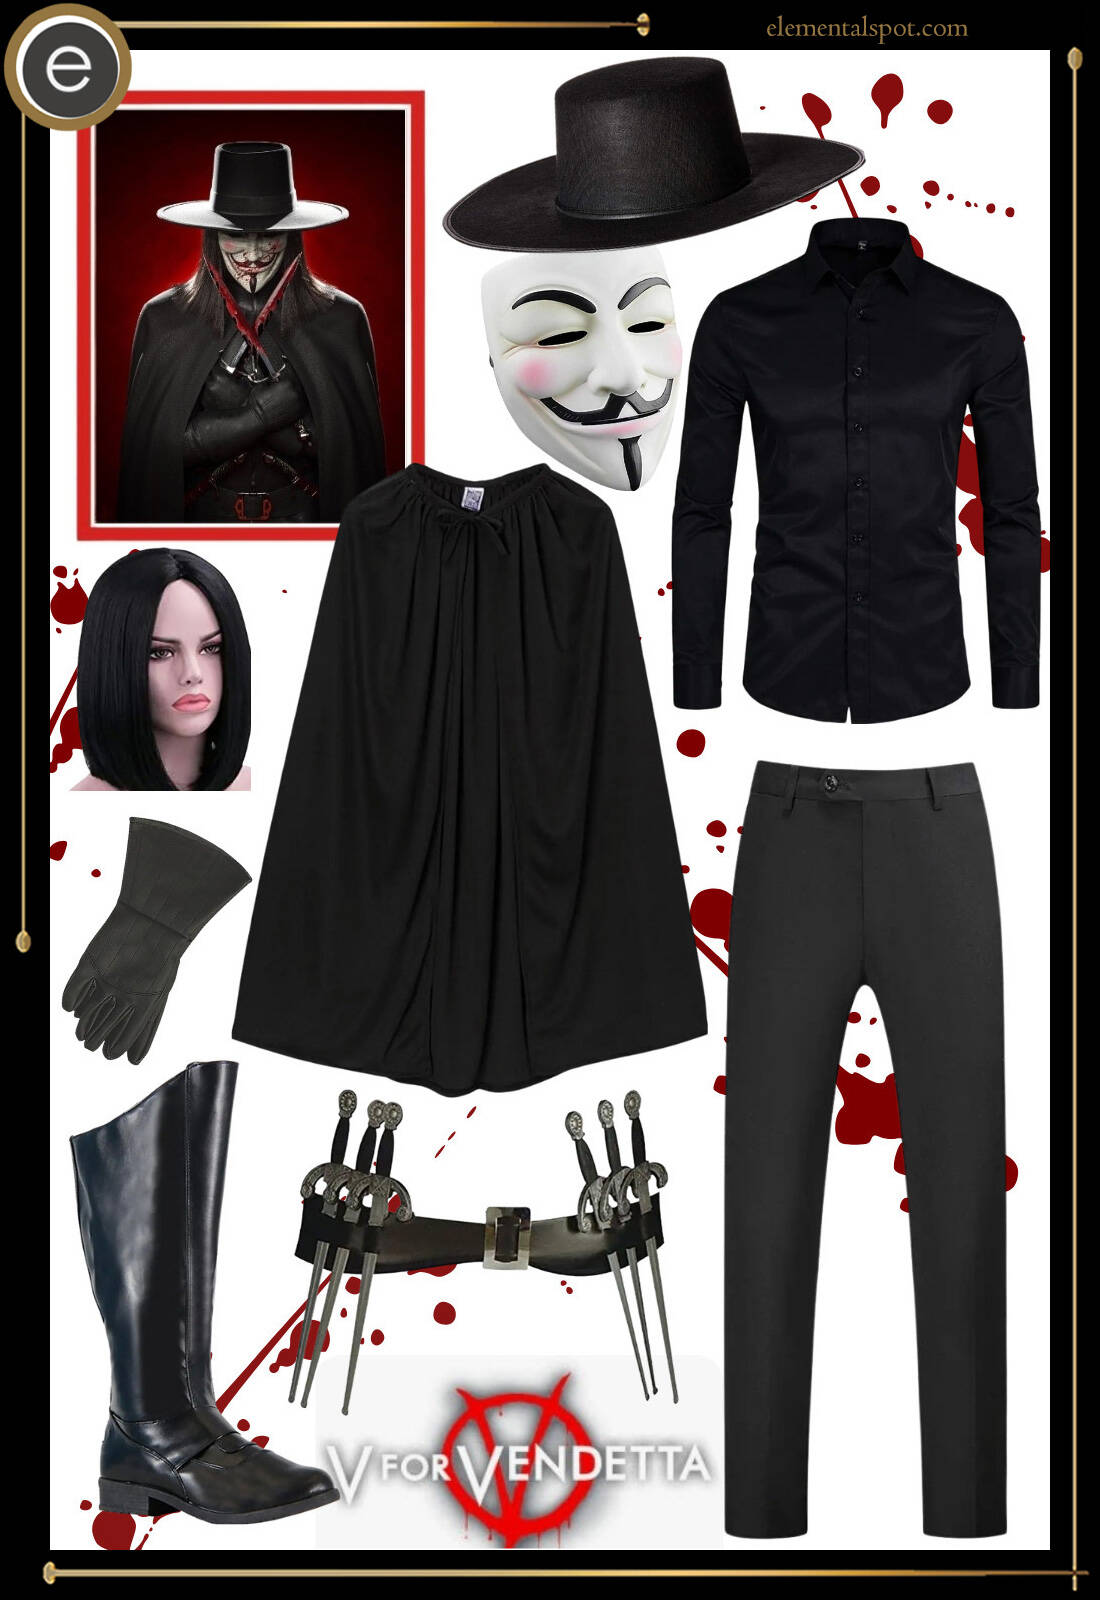 costume-V is for Vendetta-